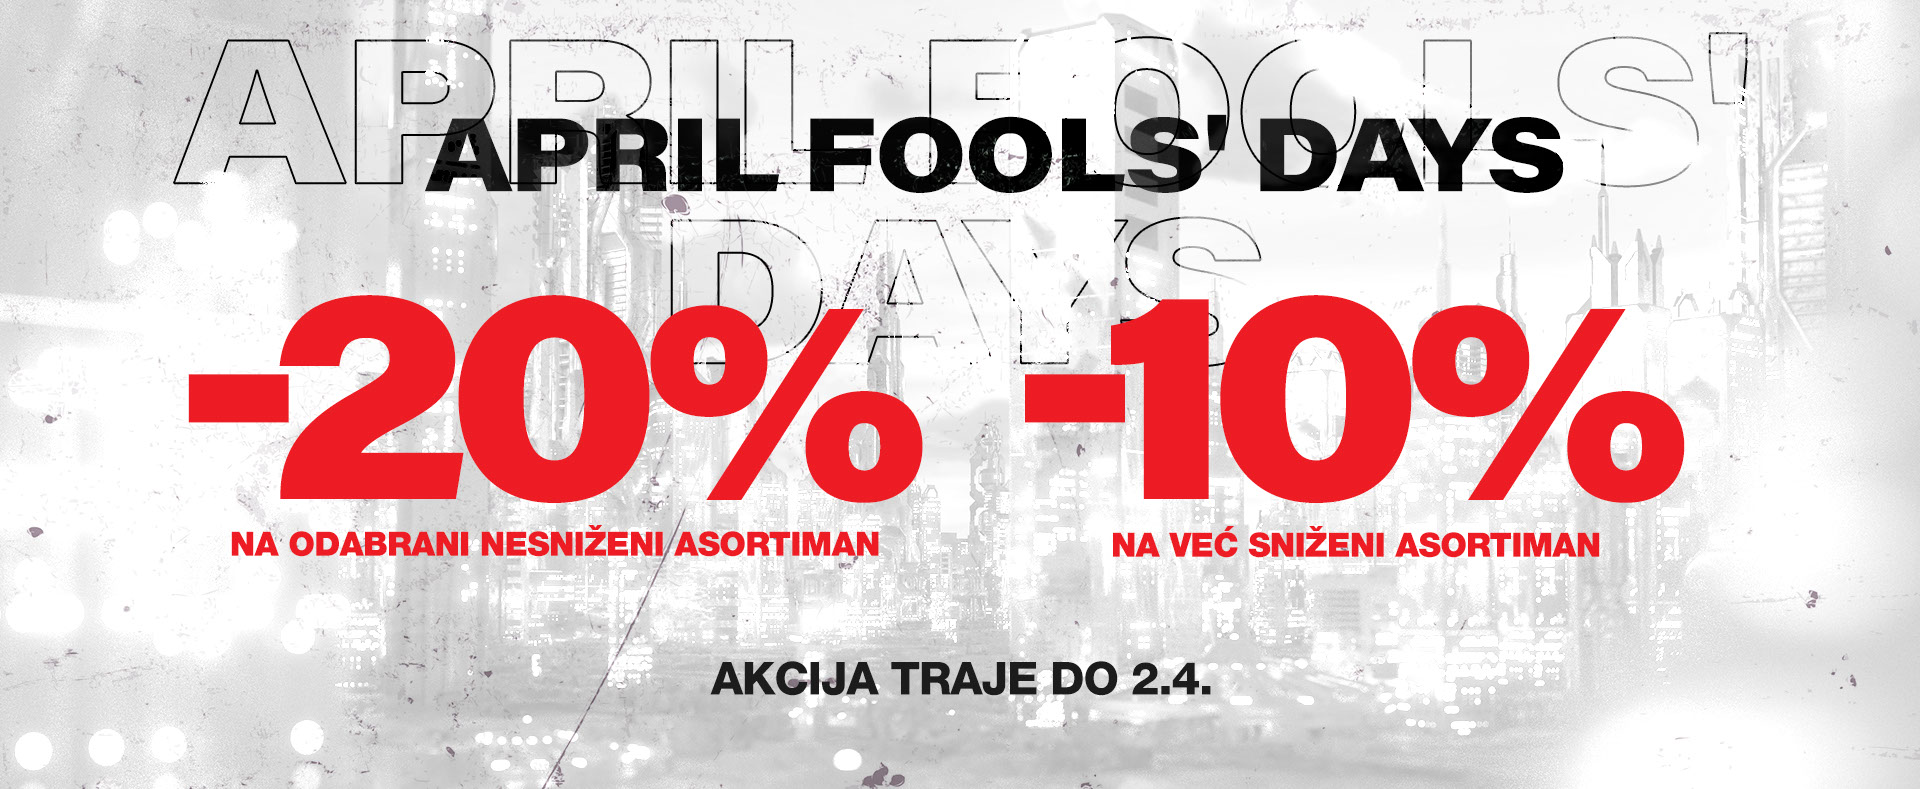 April Fools' Days